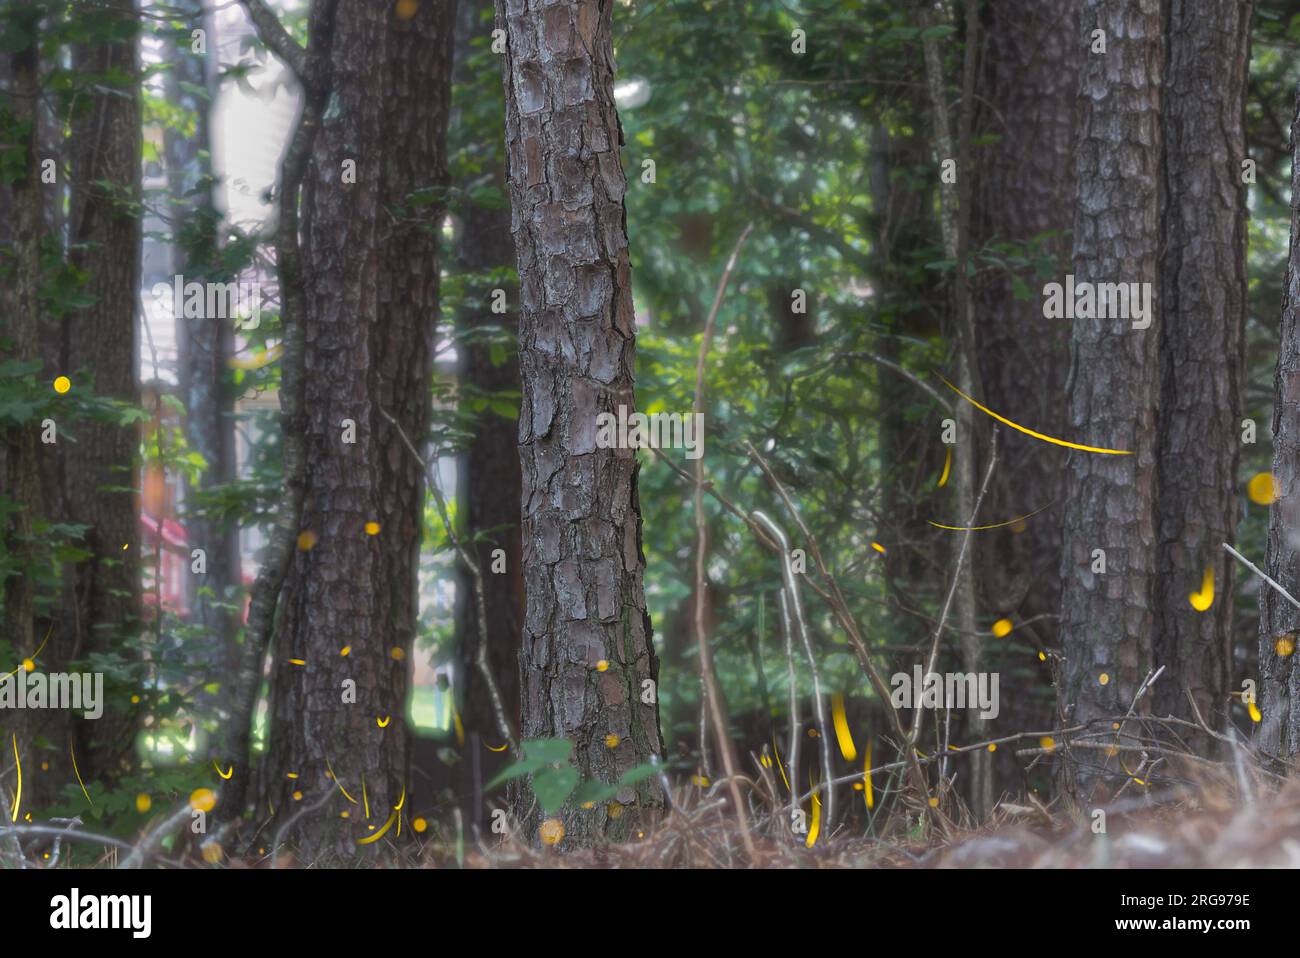 La composizione di diverse immagini sovrapposte mostra numerose lucciole, sfocatura del movimento ed emissione di strisce di luce gialla. Foto Stock